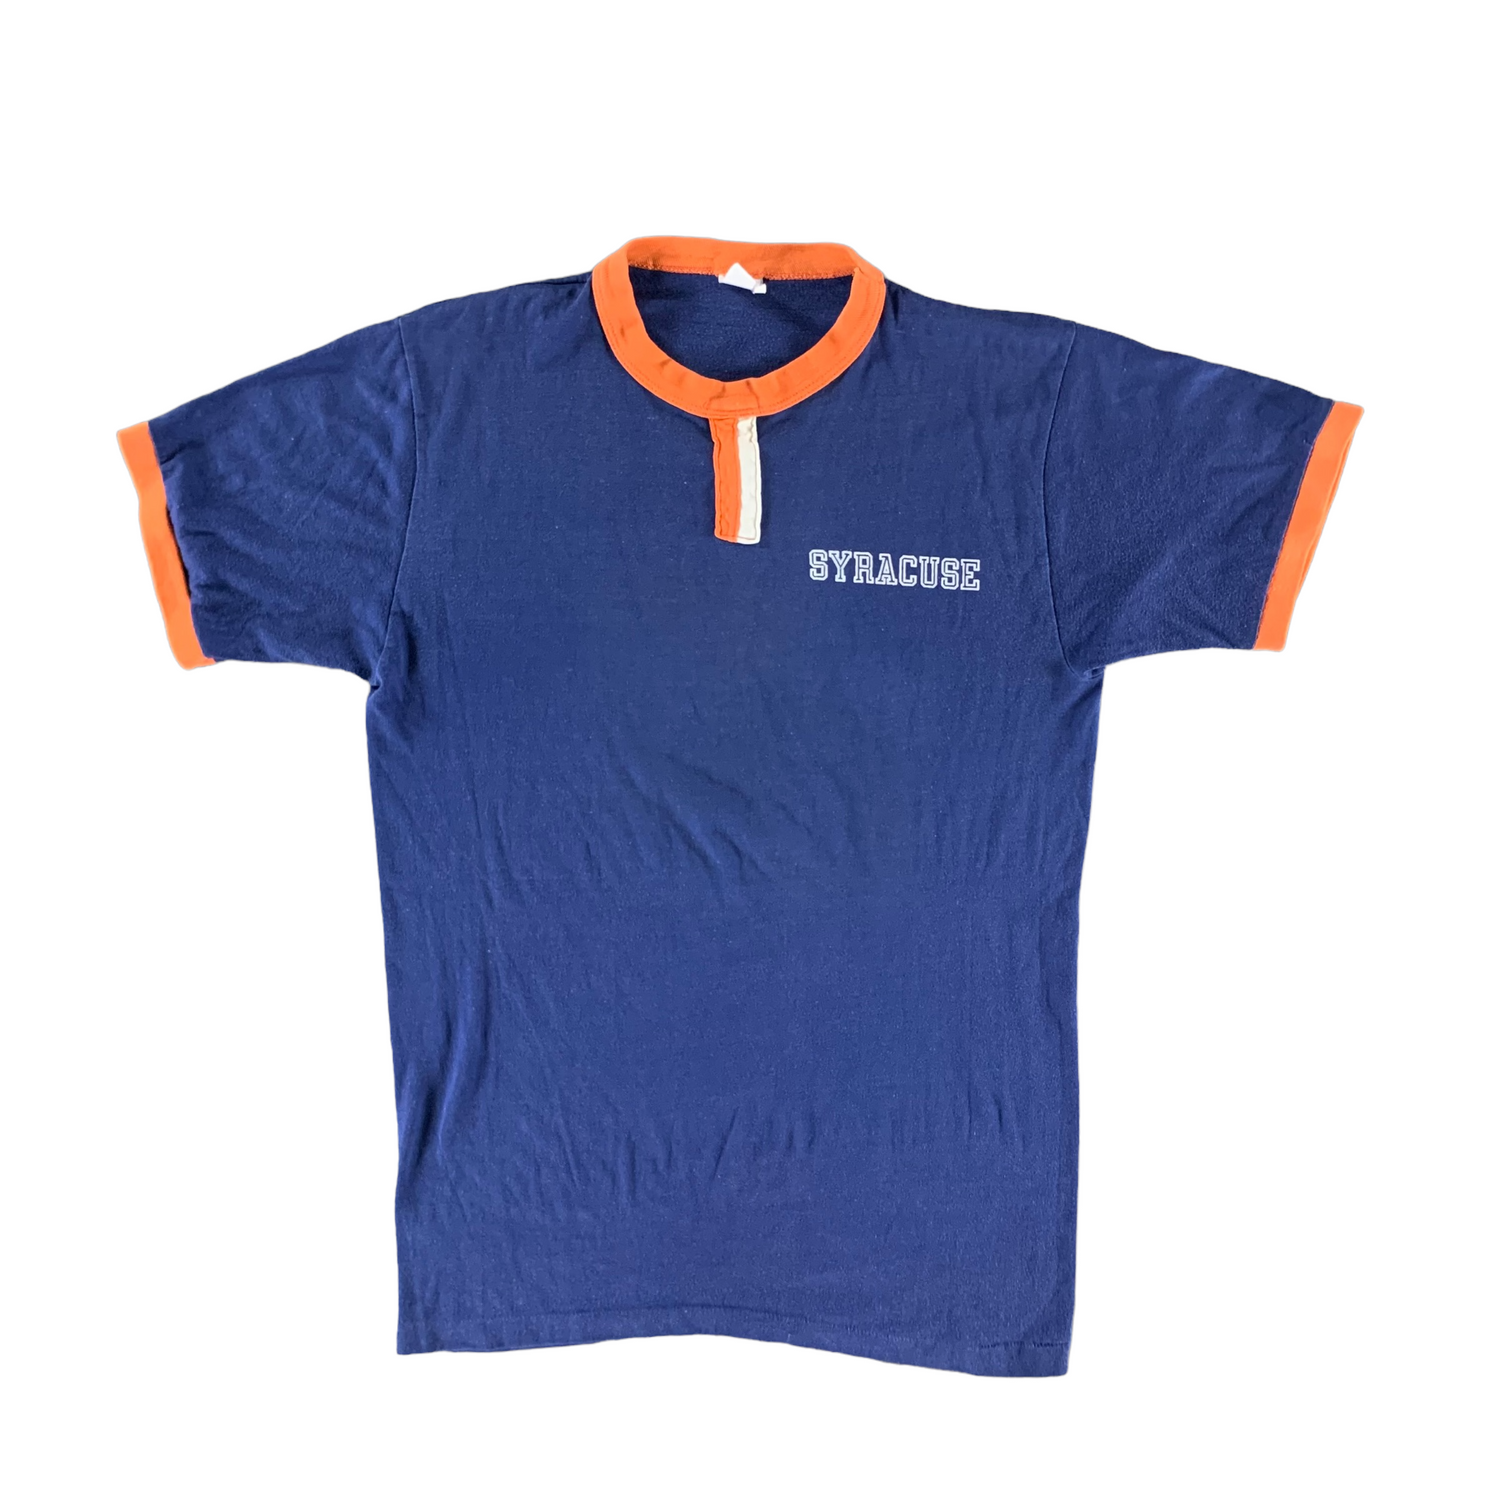 Vintage 1980s Syracuse University T-shirt size Lage